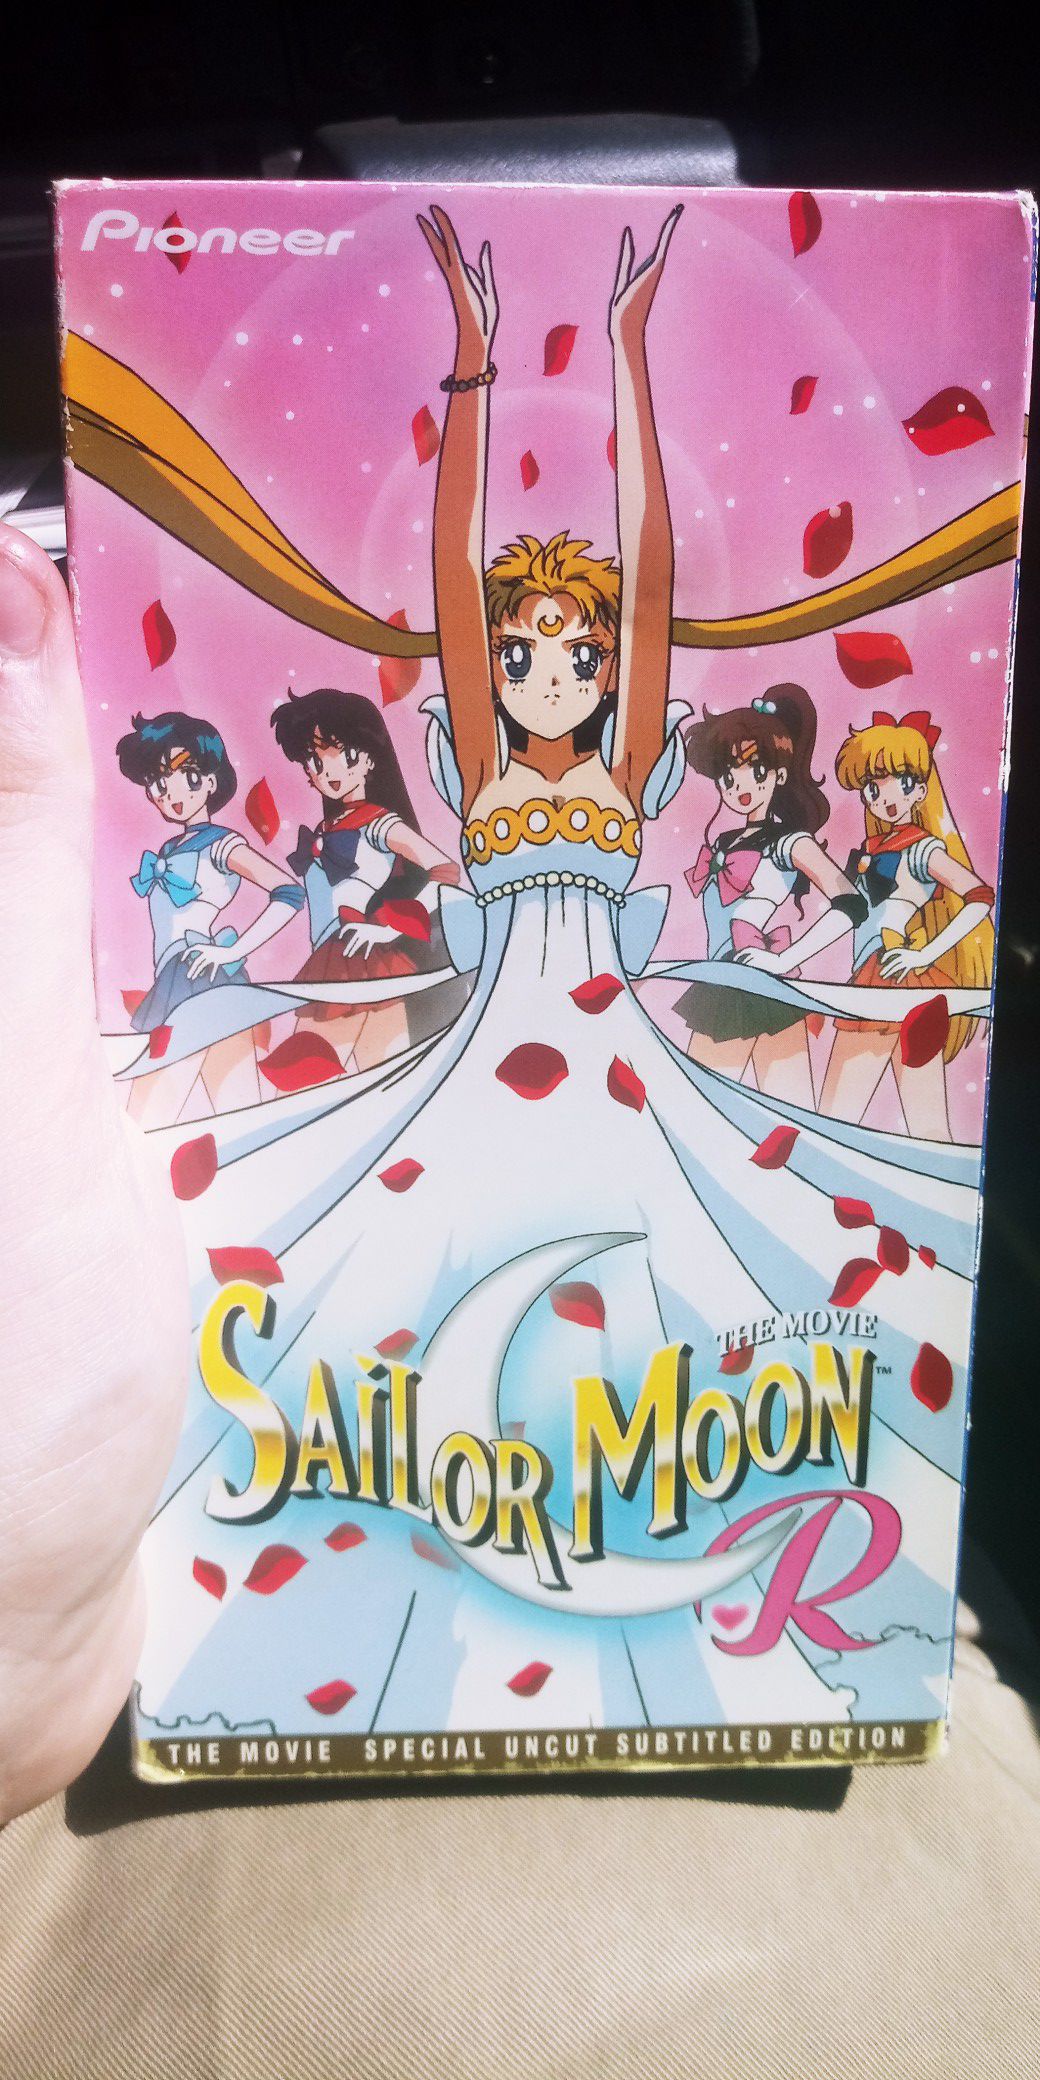 Sailor moon R the movie